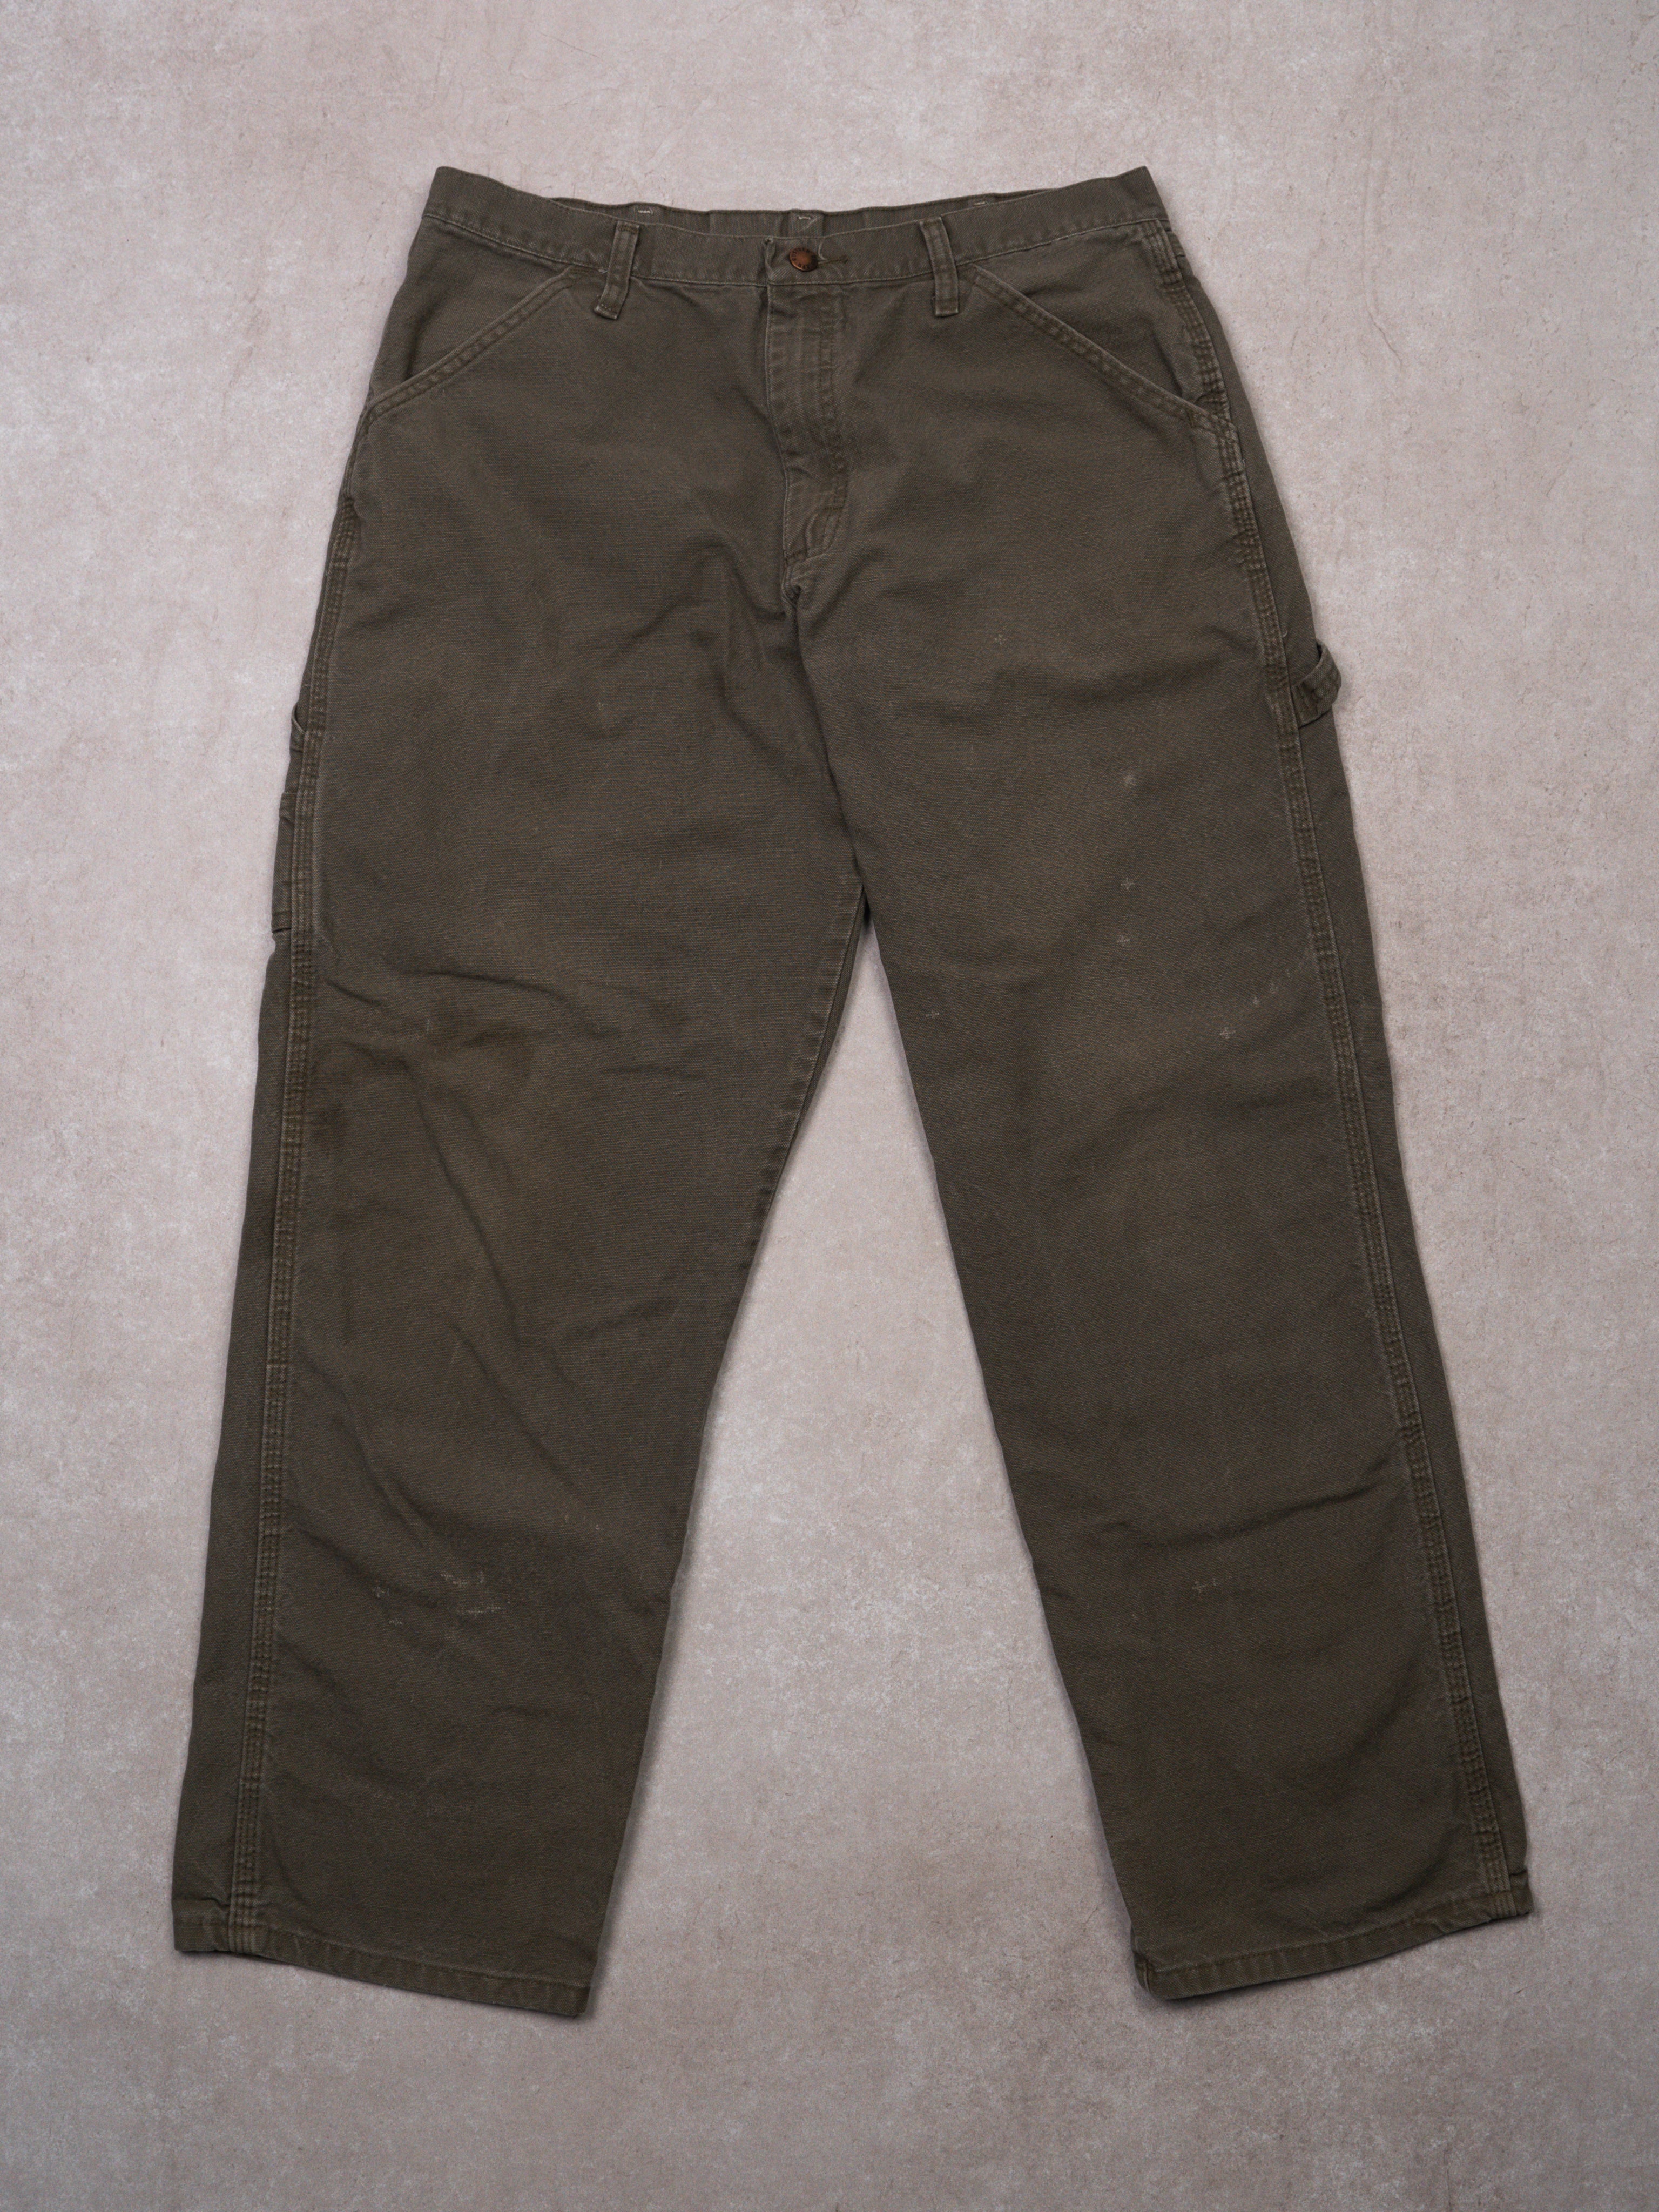 Vintage Washed Olive Rustler Denim Cargo Pants (32 x 30) – Rebalance ...